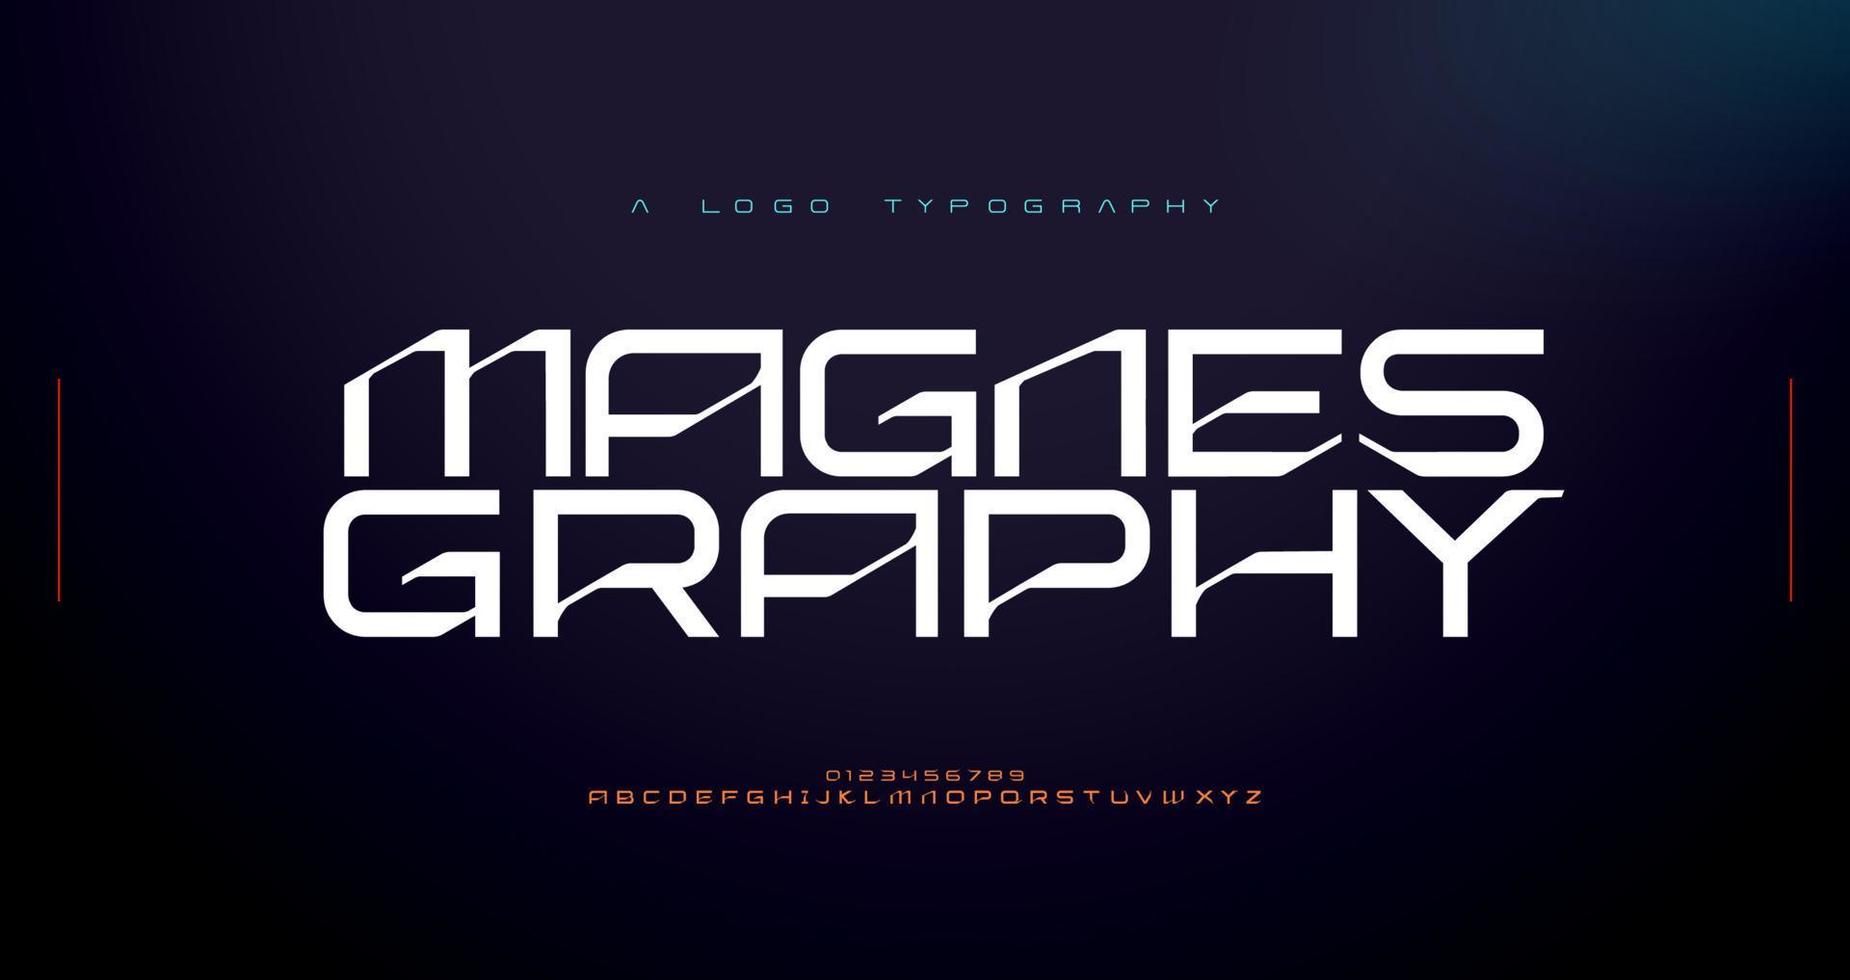 abstracte moderne techno alfabet lettertypen. typografie stedelijke sport, technologie, mode, digitaal, toekomstig creatief logo-lettertype. vector illustratie